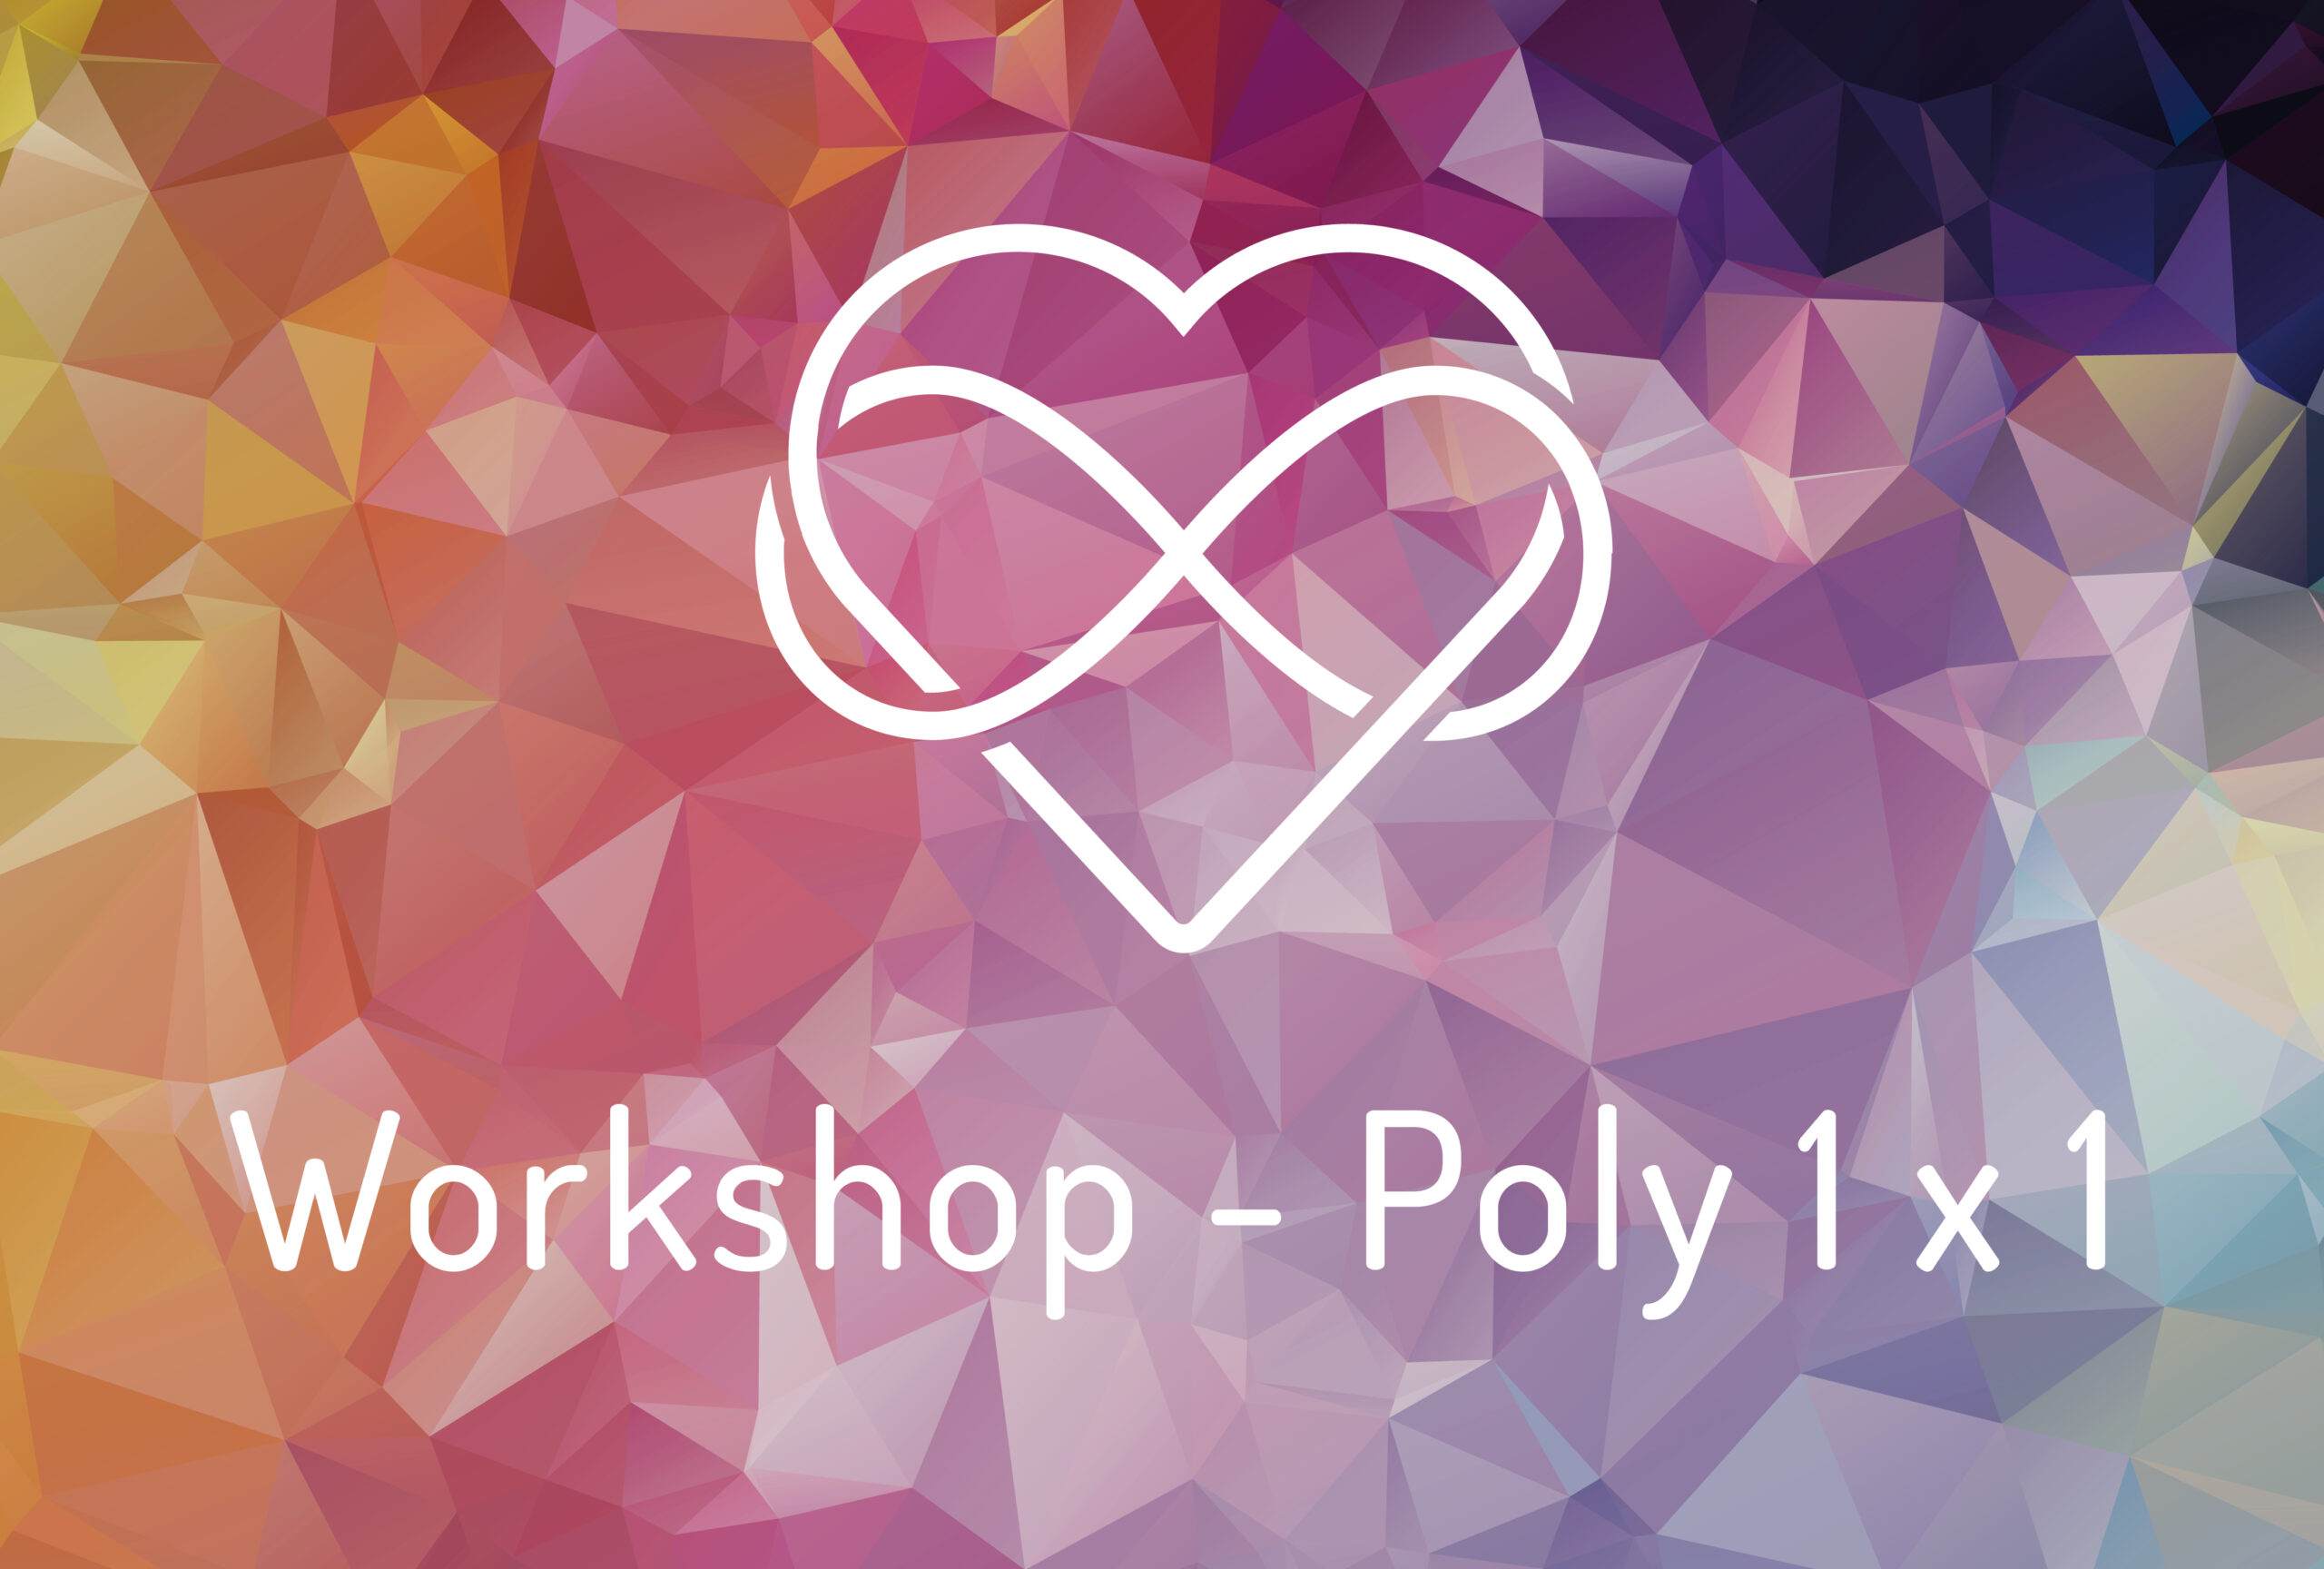 Workshop 1 X 1 Poly Dein Sex Deine Wahl Initiative Für Sexuelle Selbstbestimmung 